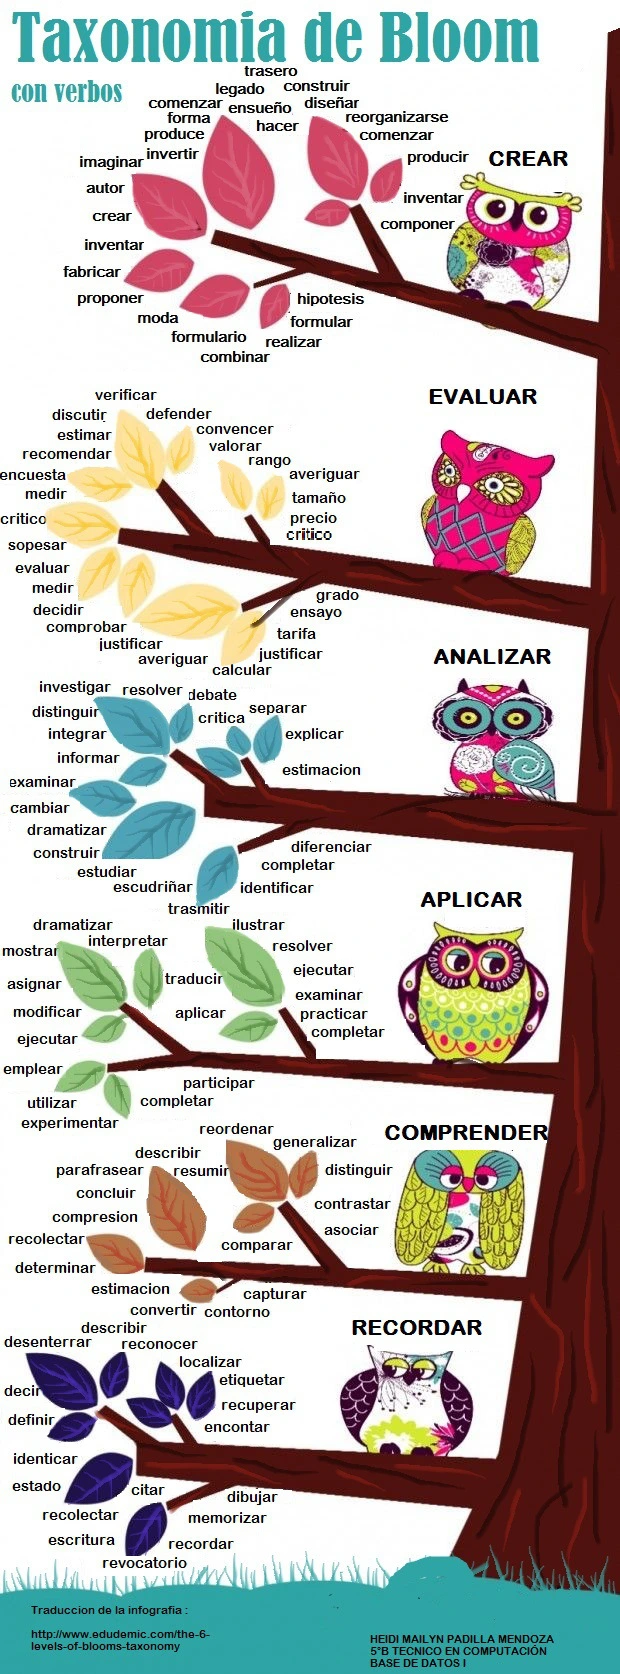 taxonomias-de-bloom-verbos-infografia